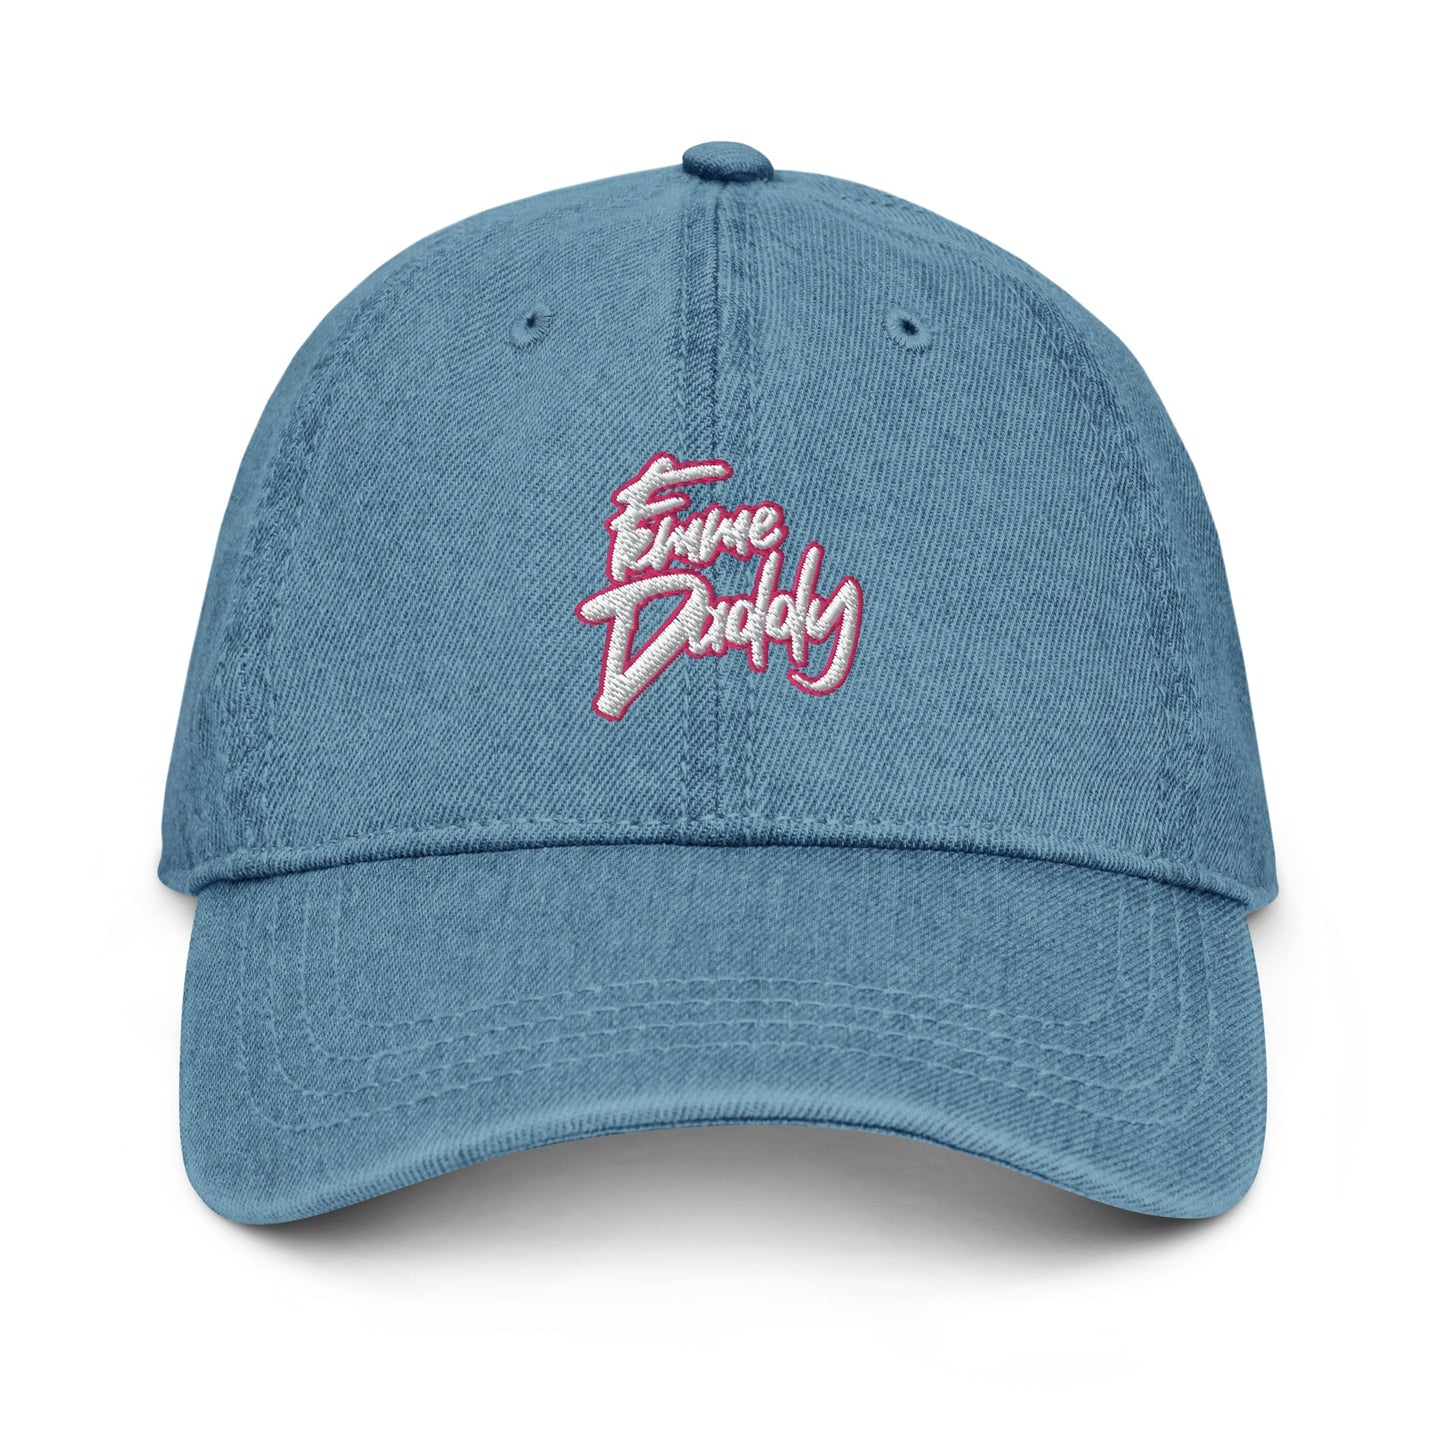 Femme Daddy Version 2 Denim Hat - Blue